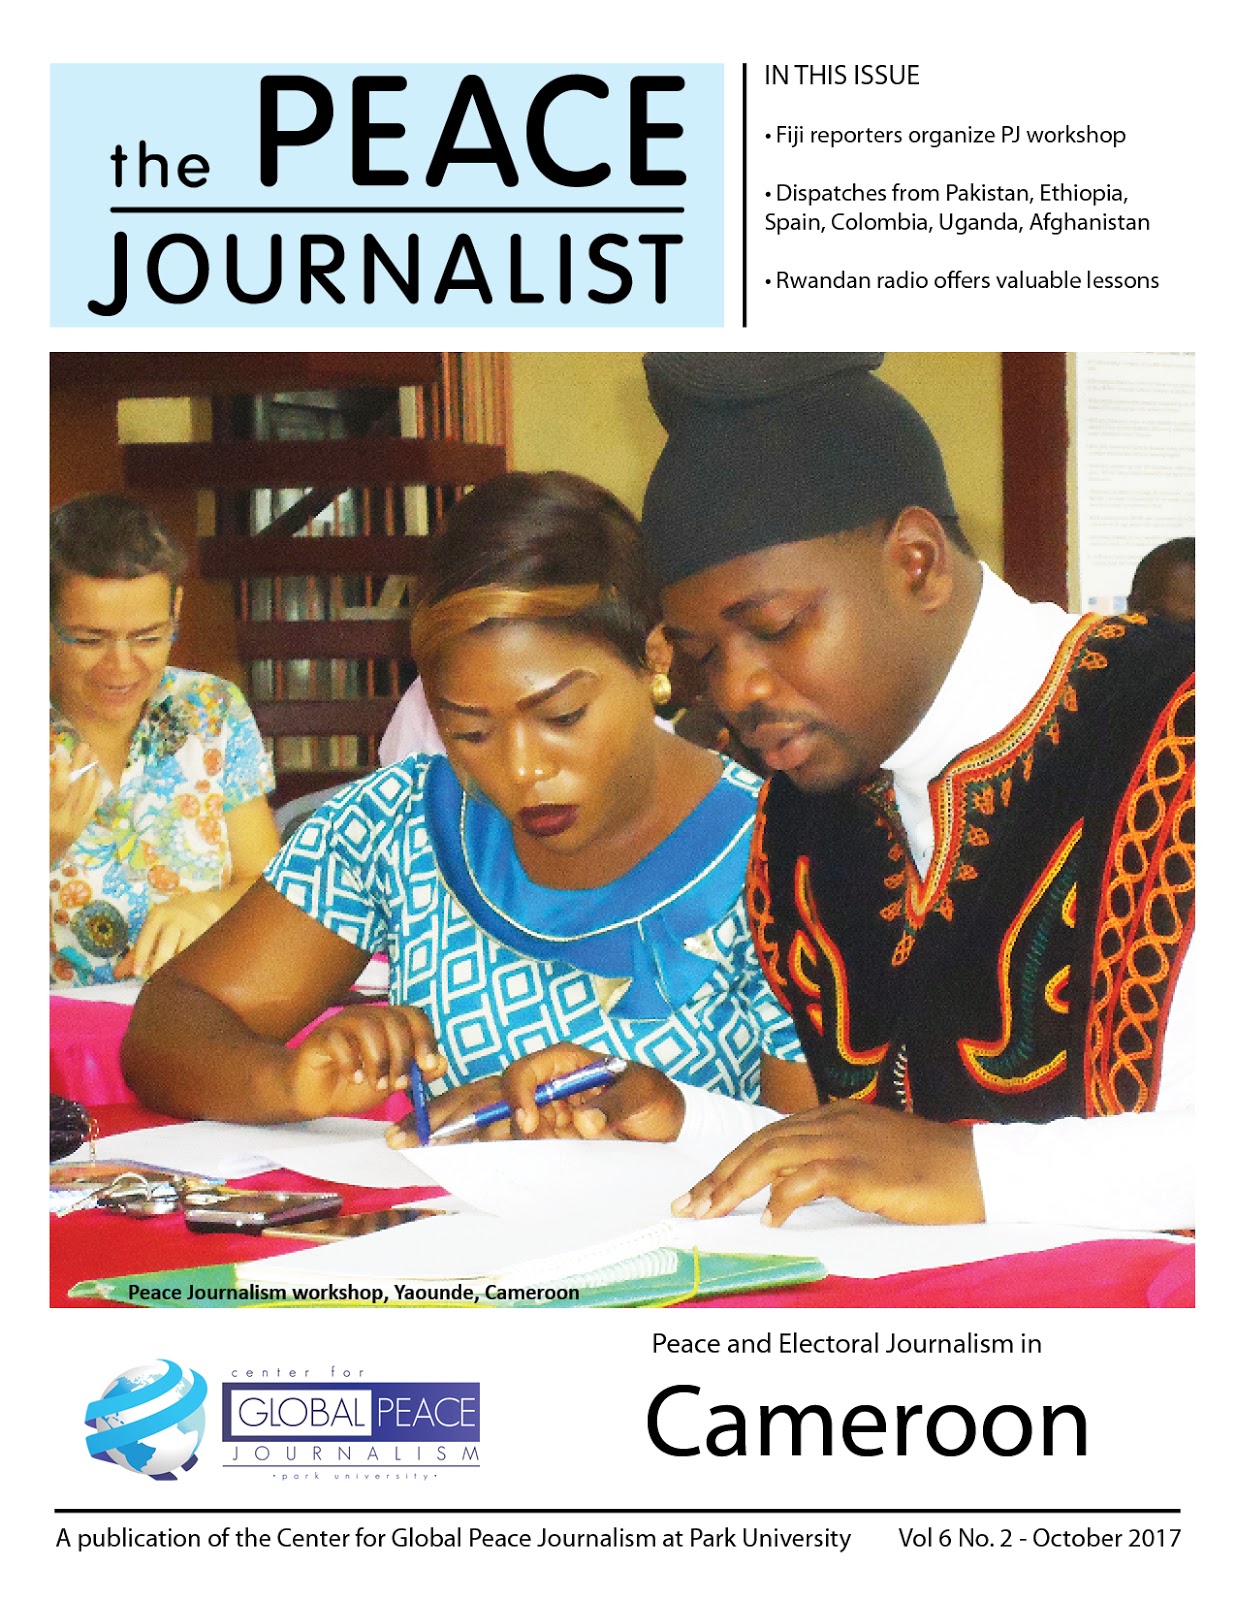 9 principles of journalism pdf